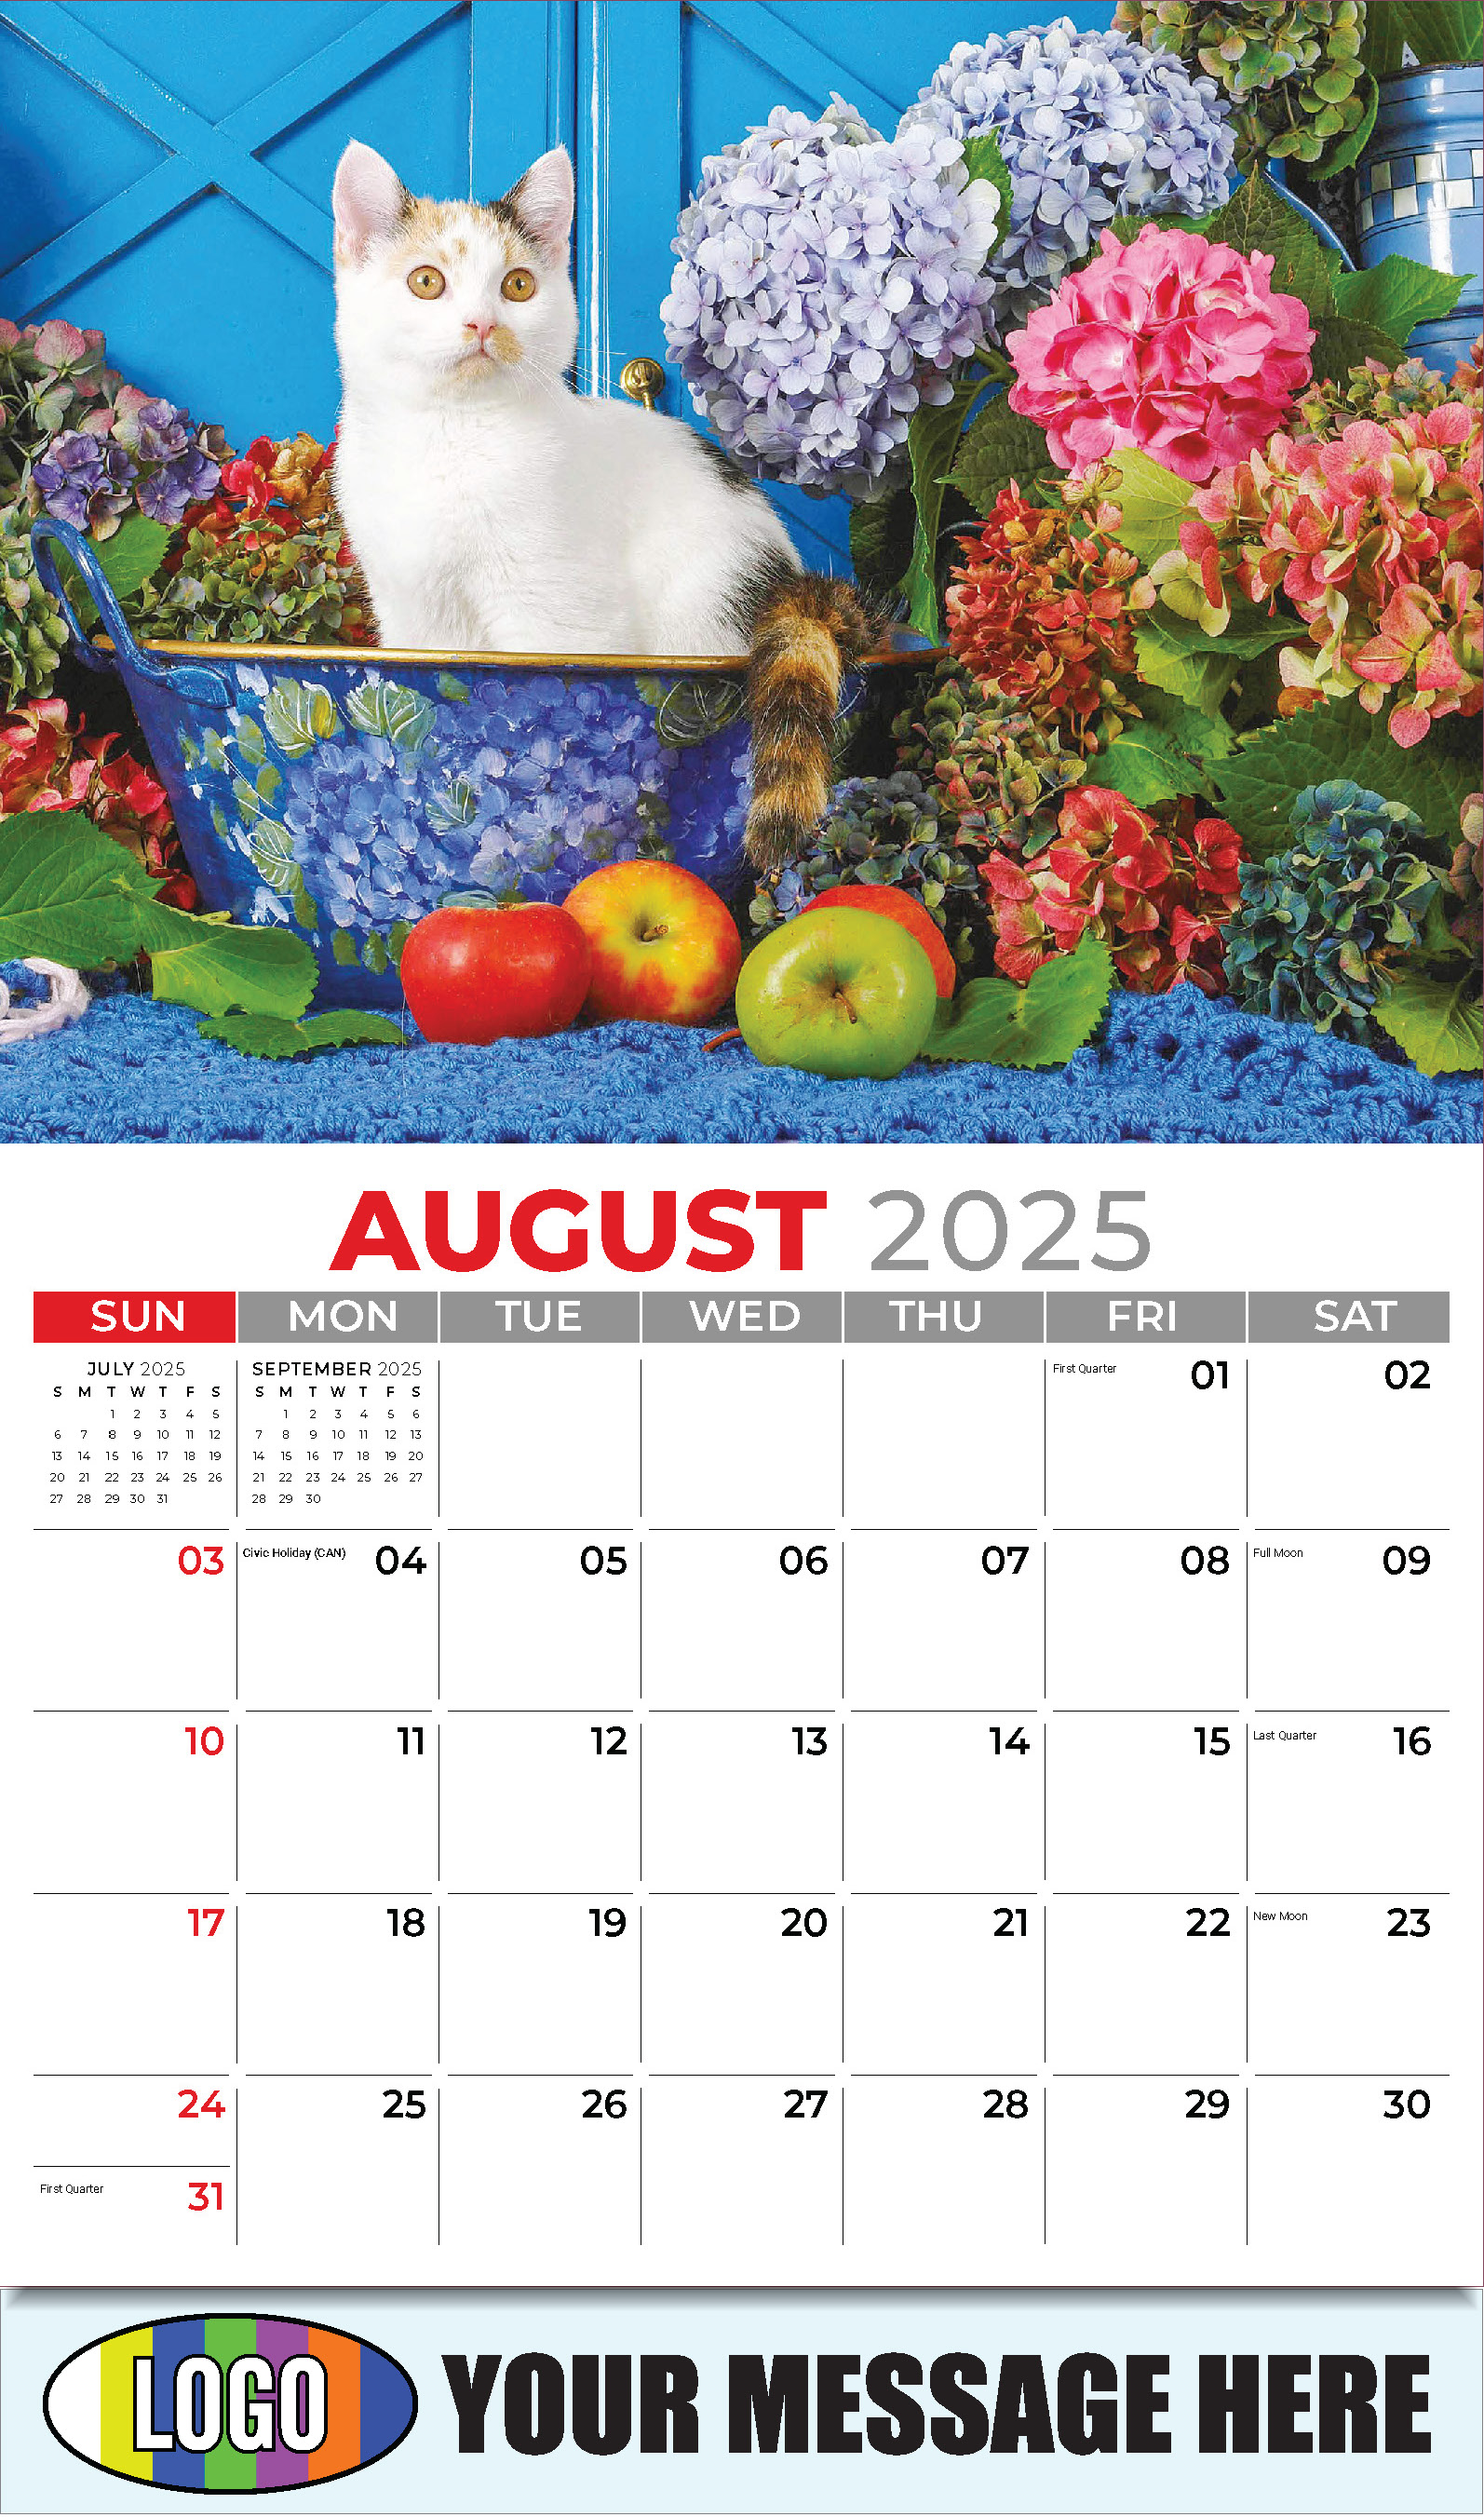 Pets 2025 Business Advertising Wall Calendar - August